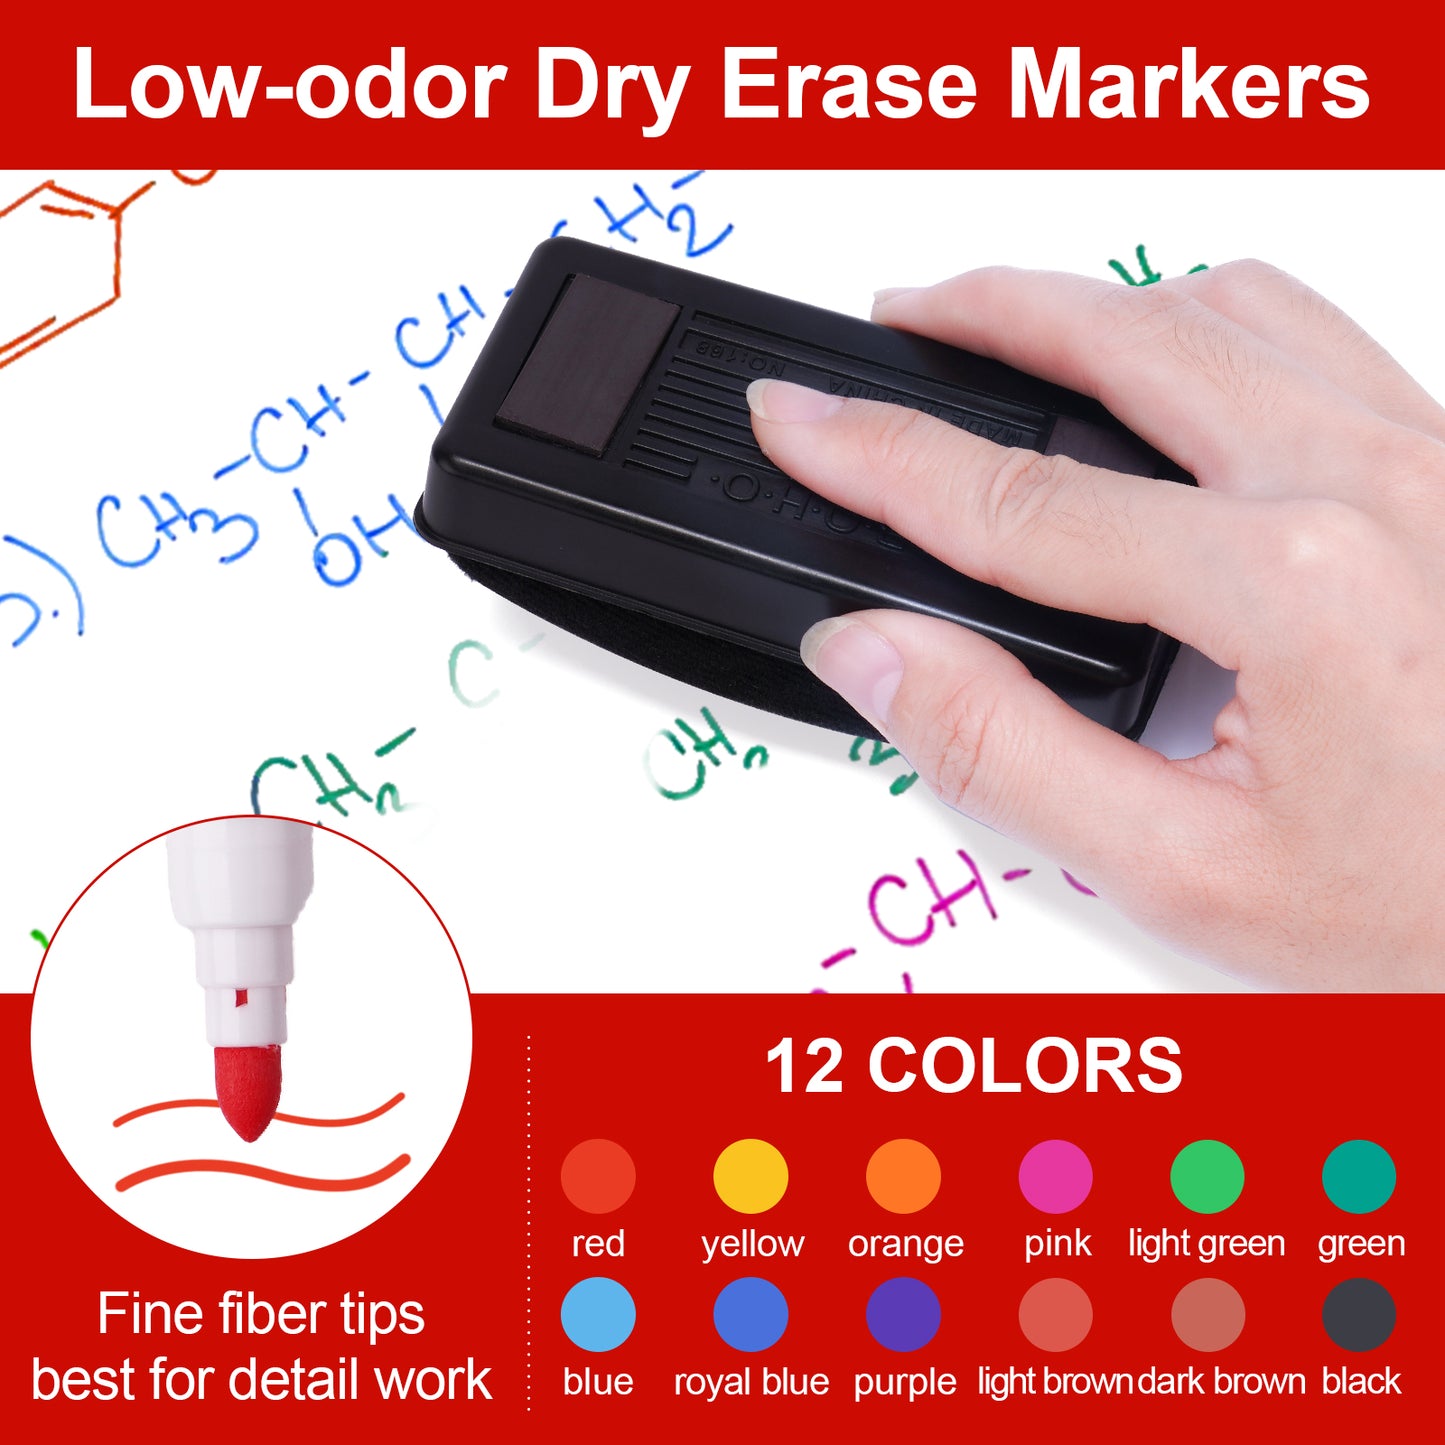 Whiteboard Magnetic Dry Erase Marker Holder Set 12 Assorted Colors Fine Dry Er